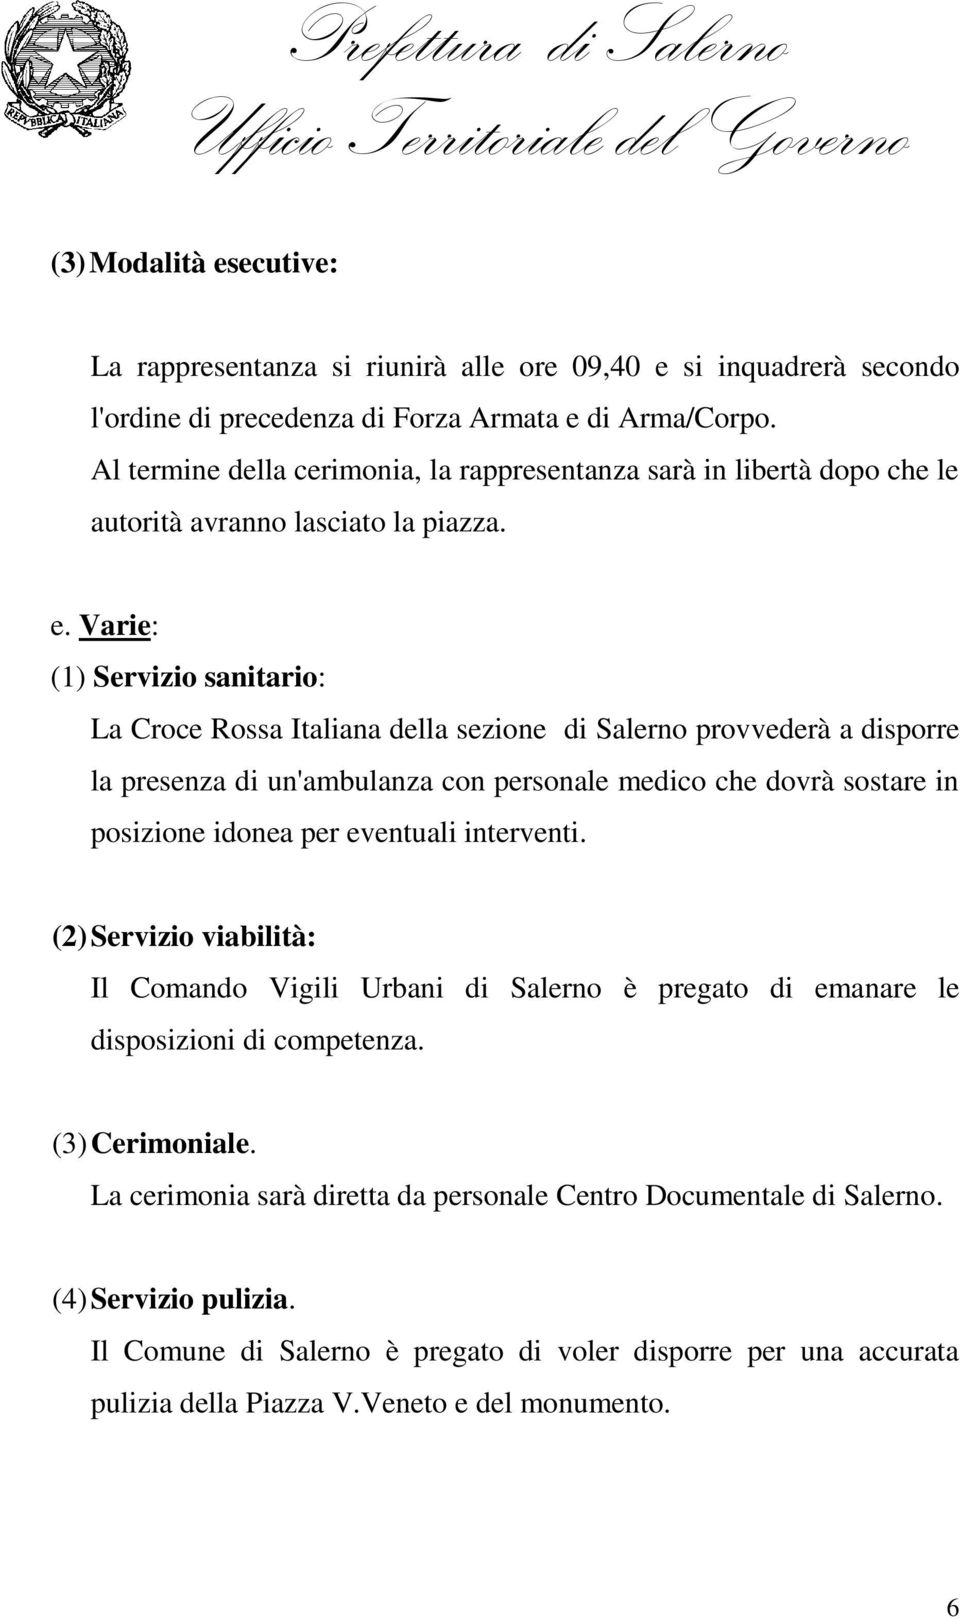 Varie: (1) Servizio sanitario: La Croce Rossa Italiana della sezione di Salerno provvederà a disporre la presenza di un'ambulanza con personale medico che dovrà sostare in posizione idonea per